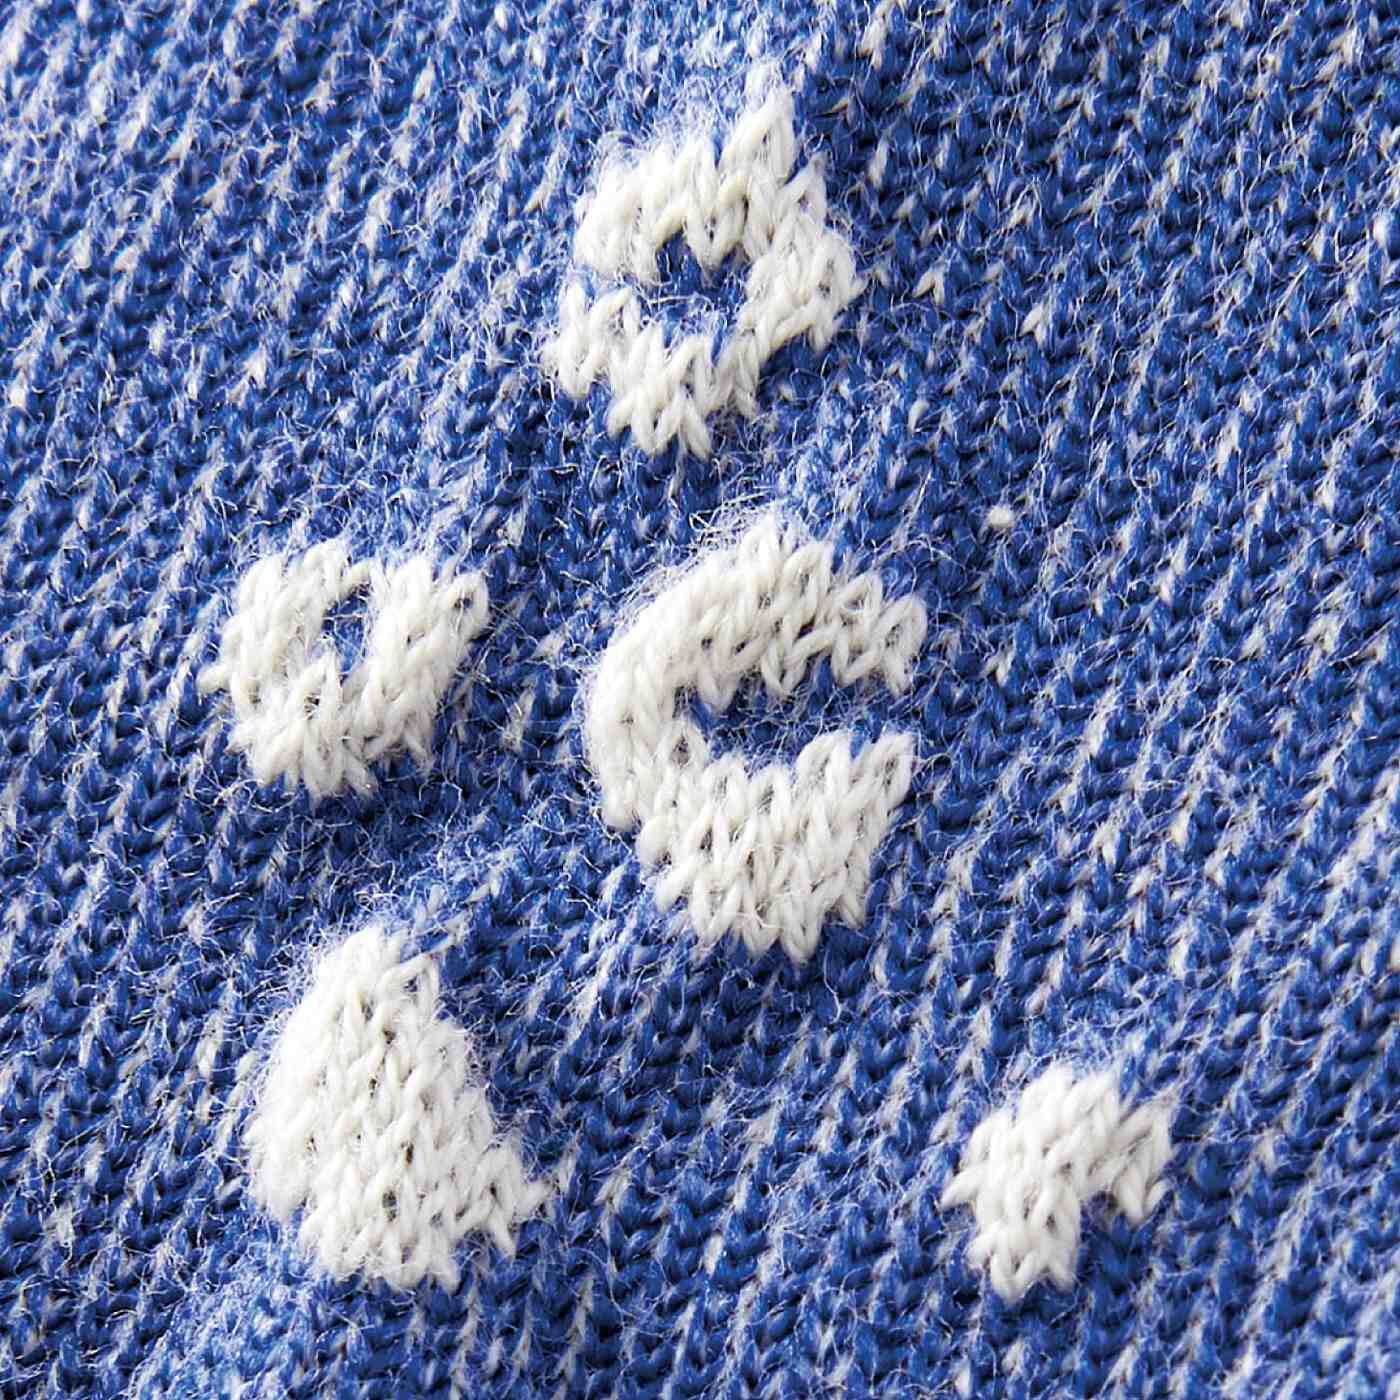 SAANA JA OLLI|サーナ ヤ オッリ　アートと編地の組み合わせを楽しむ　かかと肌側のみシルク遣いのコットン混靴下の会|浮かし編み：柄がいきいきと見える浮かし編み。